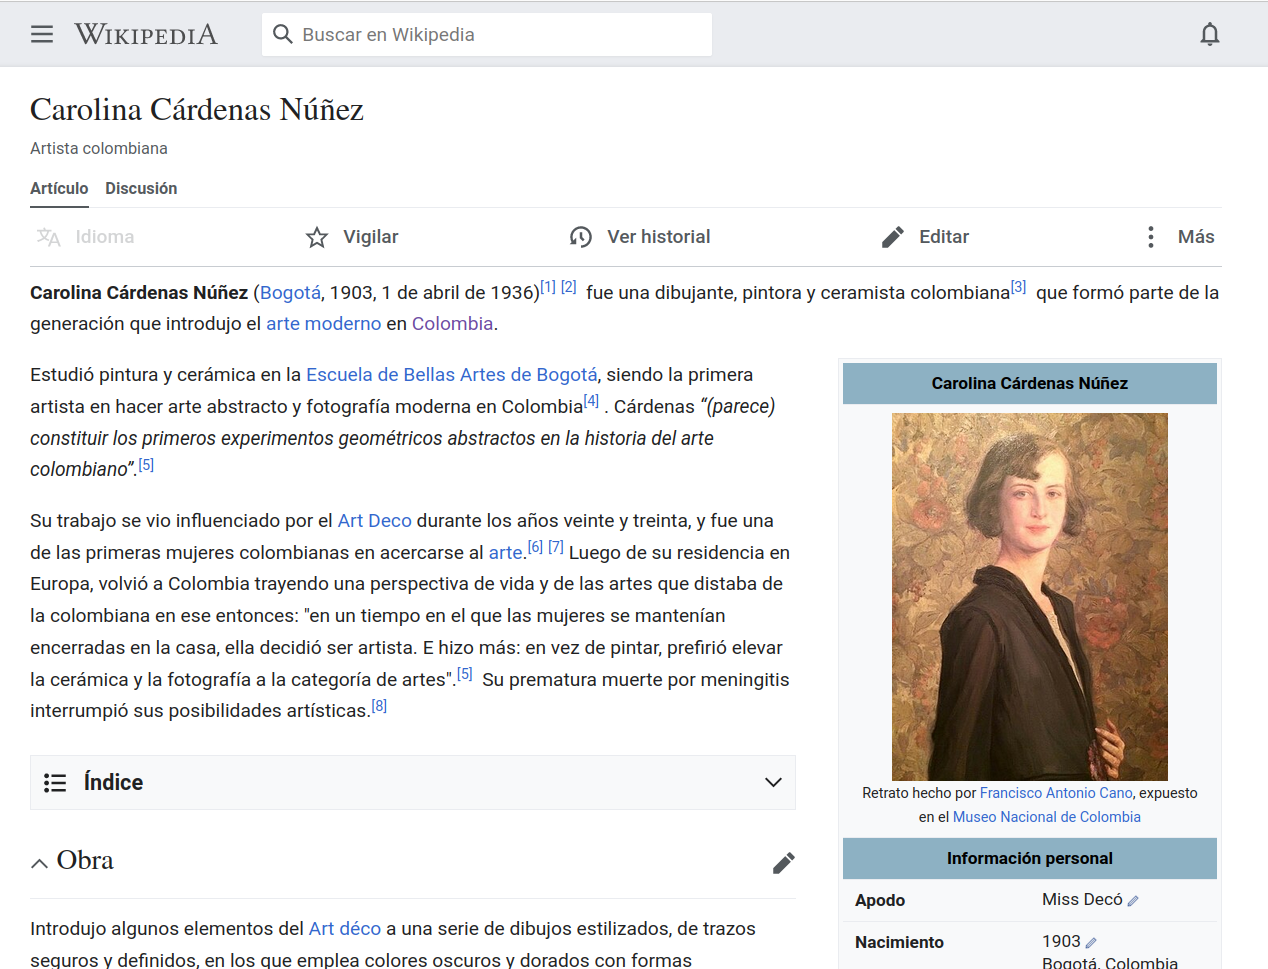 Carolina C´rdenas N´ñez´s Wikipedia Article